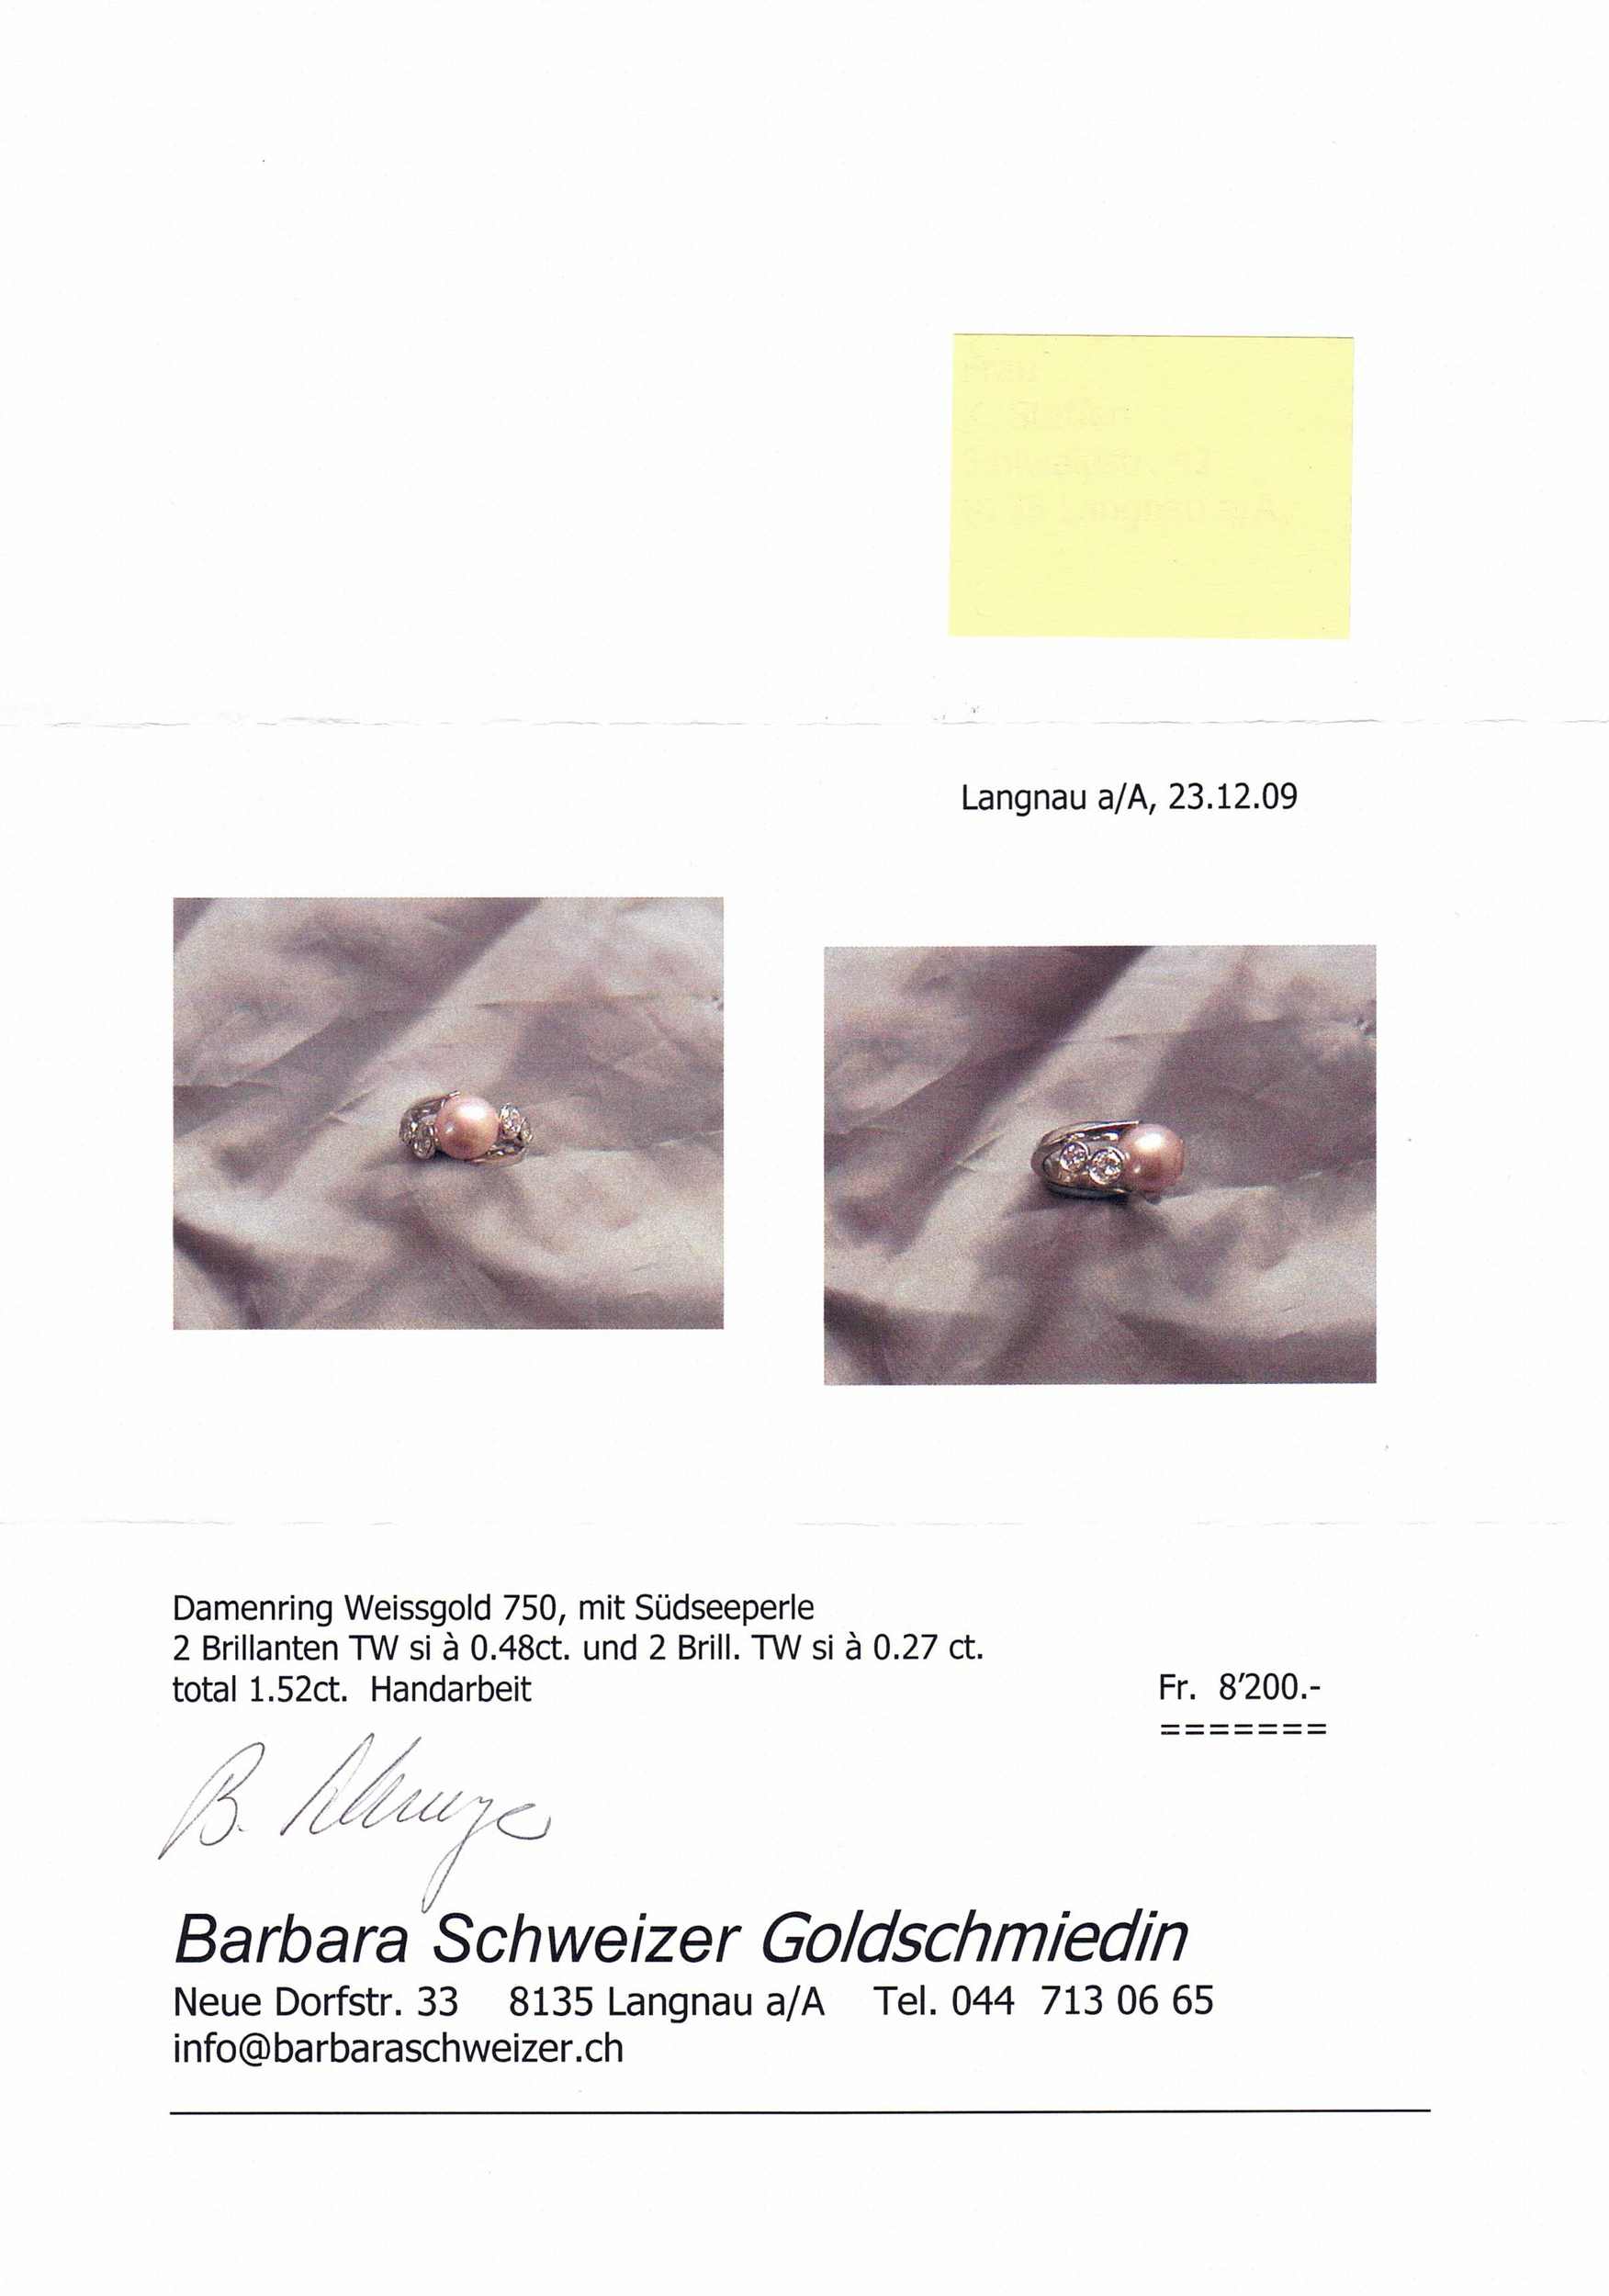 Süsswasser-Zuchtperlen-Set Schöne Perlen Kombination in Weissgold 18K. Feine Selektion aus - Image 3 of 3